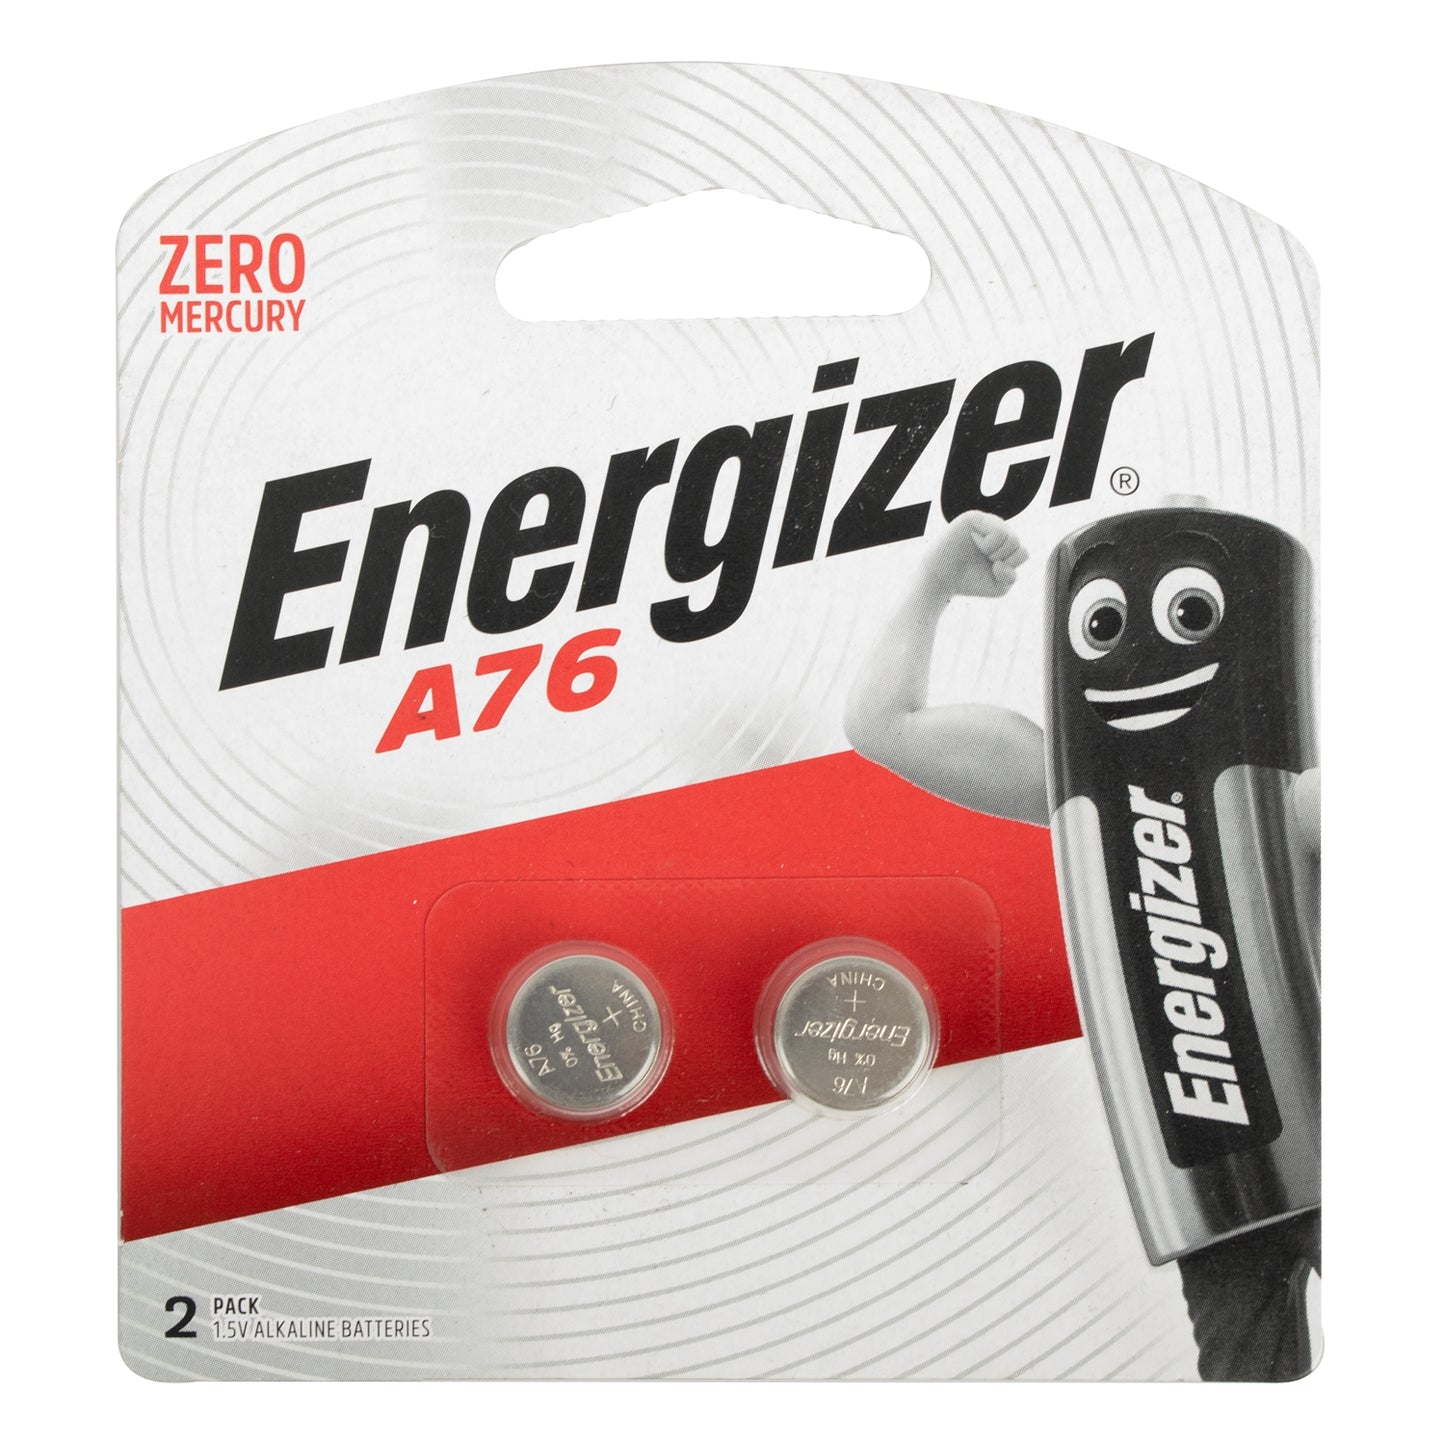 Energizer a76 lr44 1.5v alkaline battery 2 pack (moq 12) coin